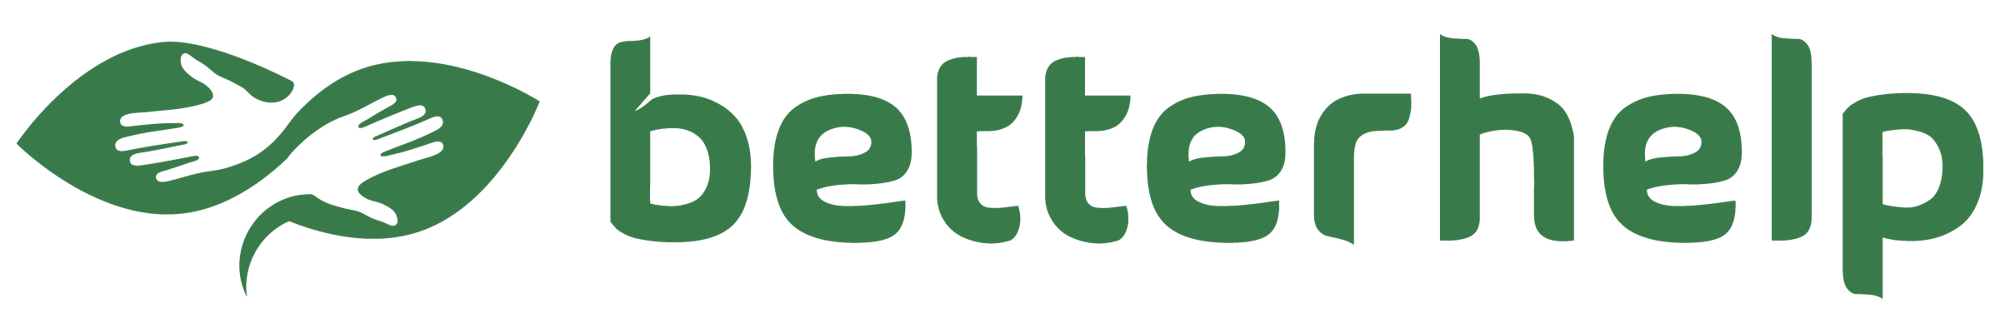 betterhelp-logo